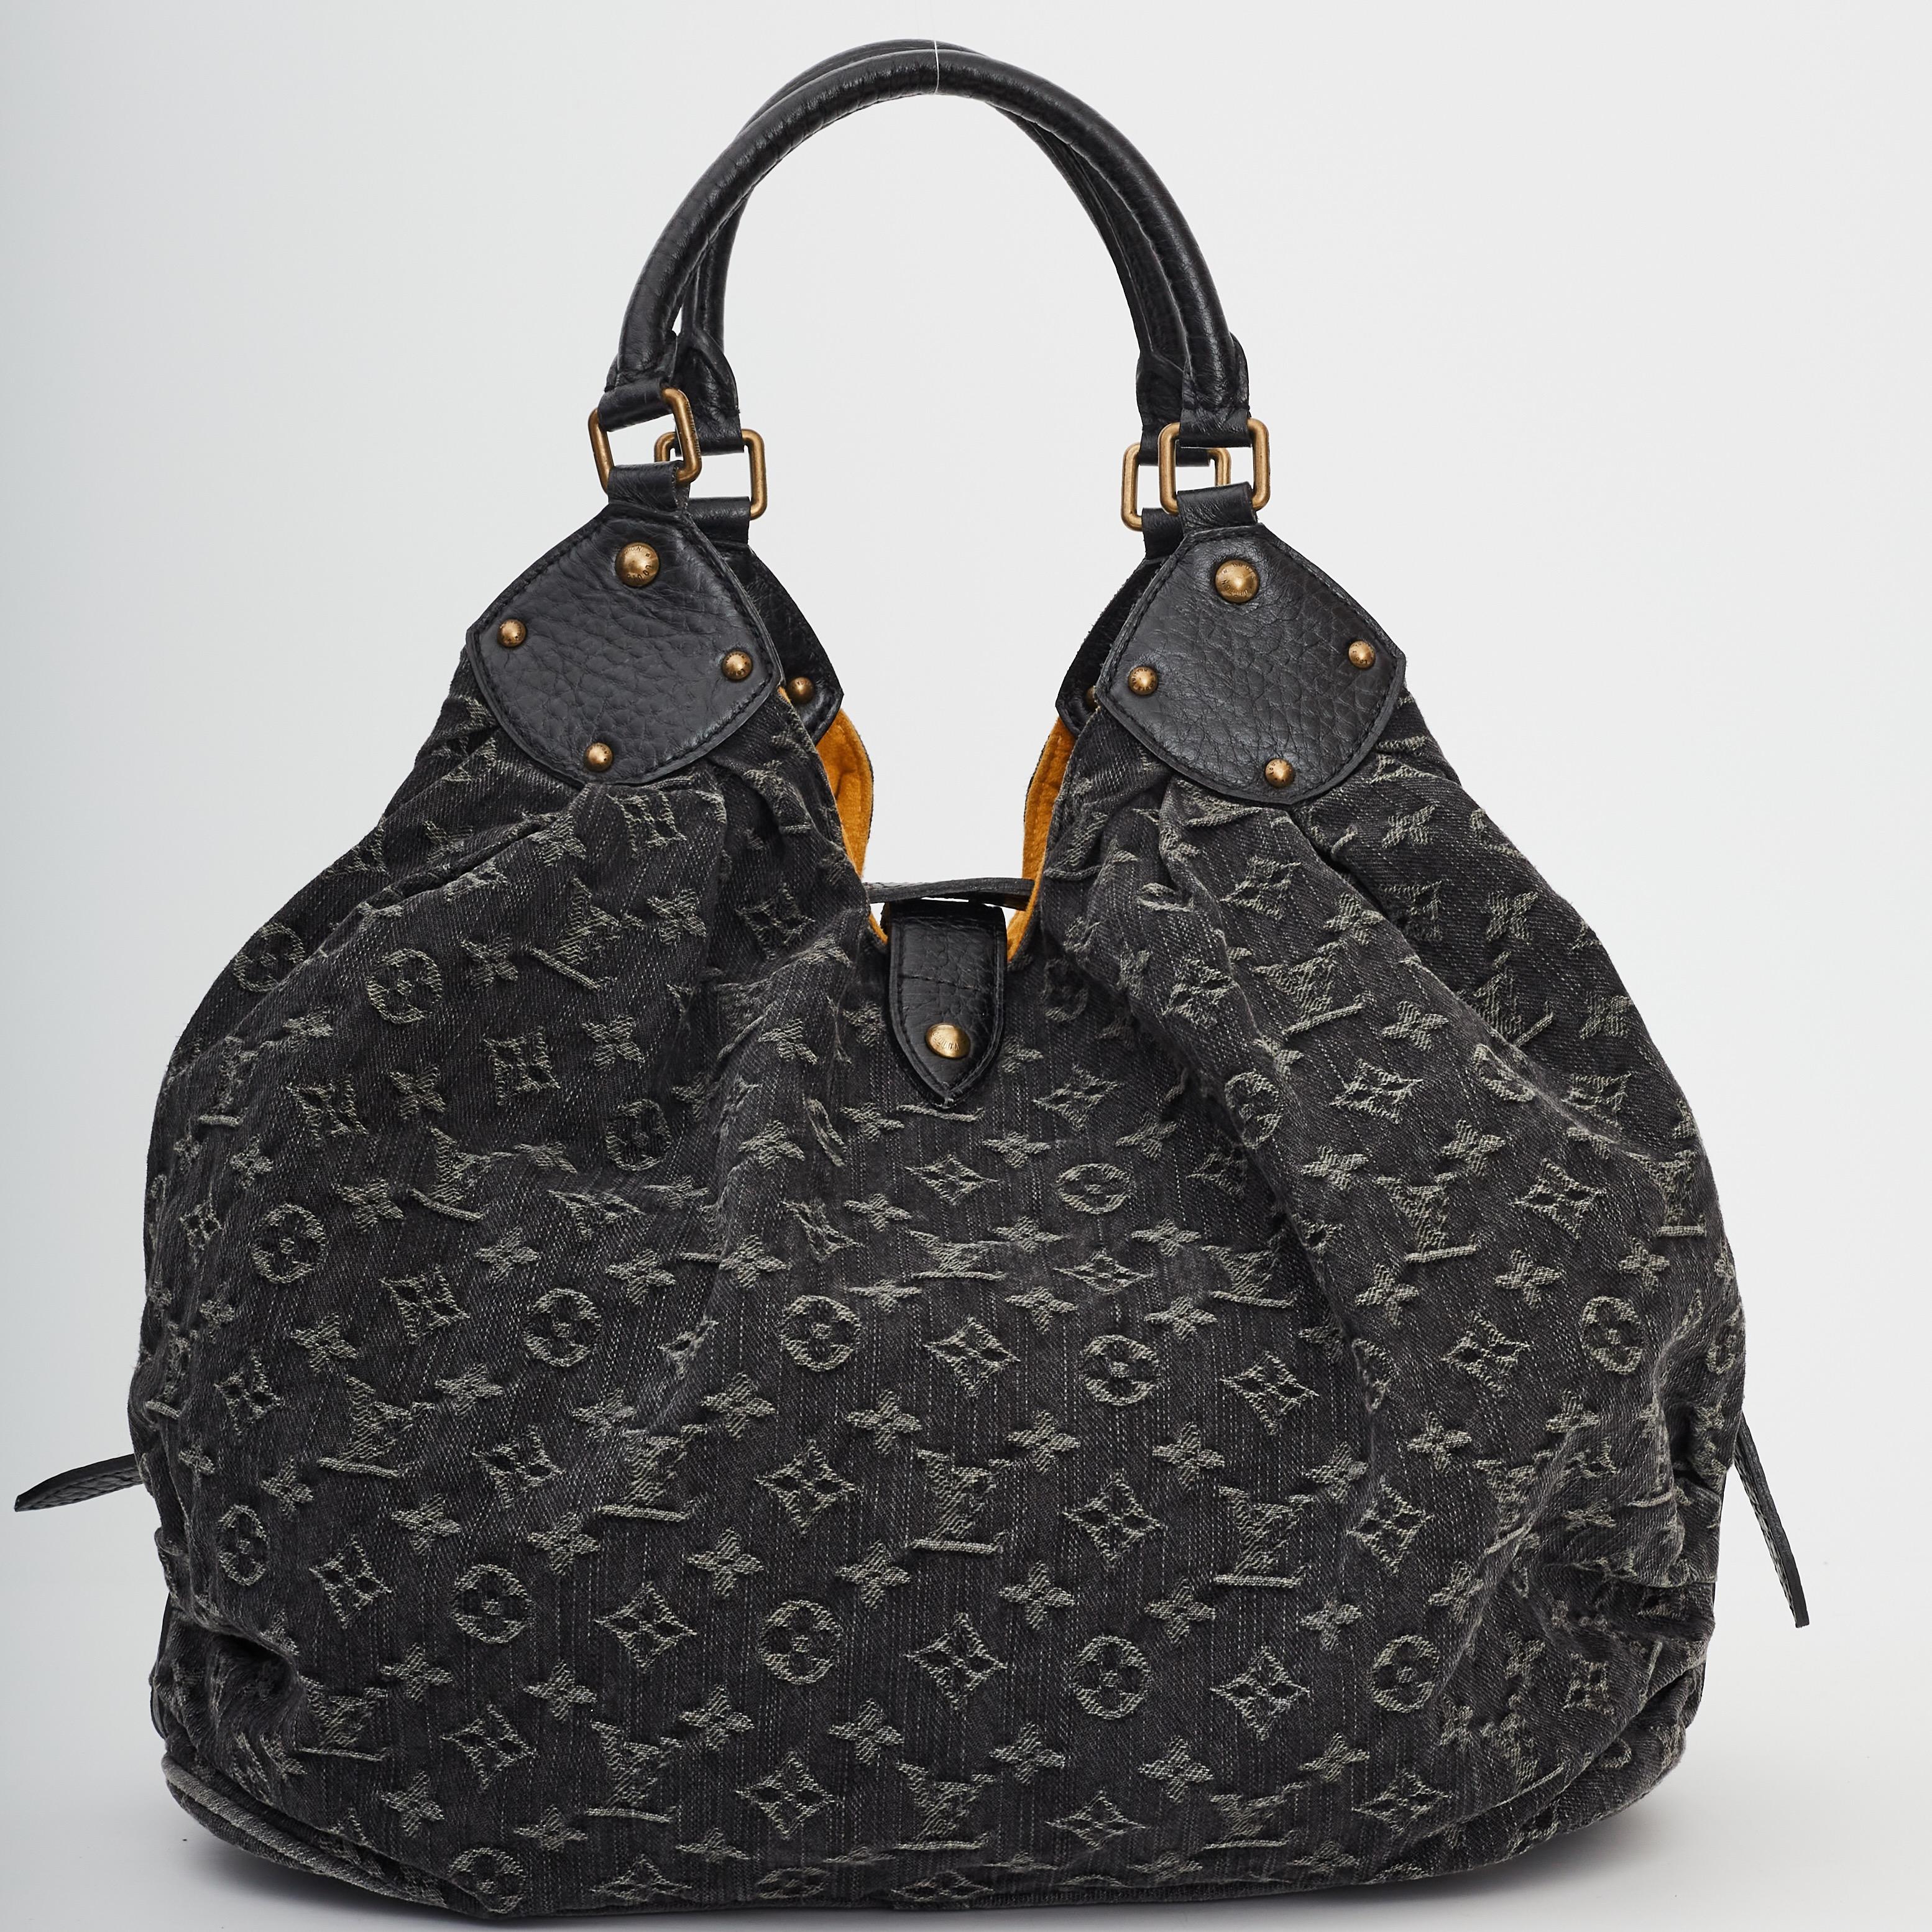 Louis Vuitton Denim Mahina Xl Bag - For Sale on 1stDibs